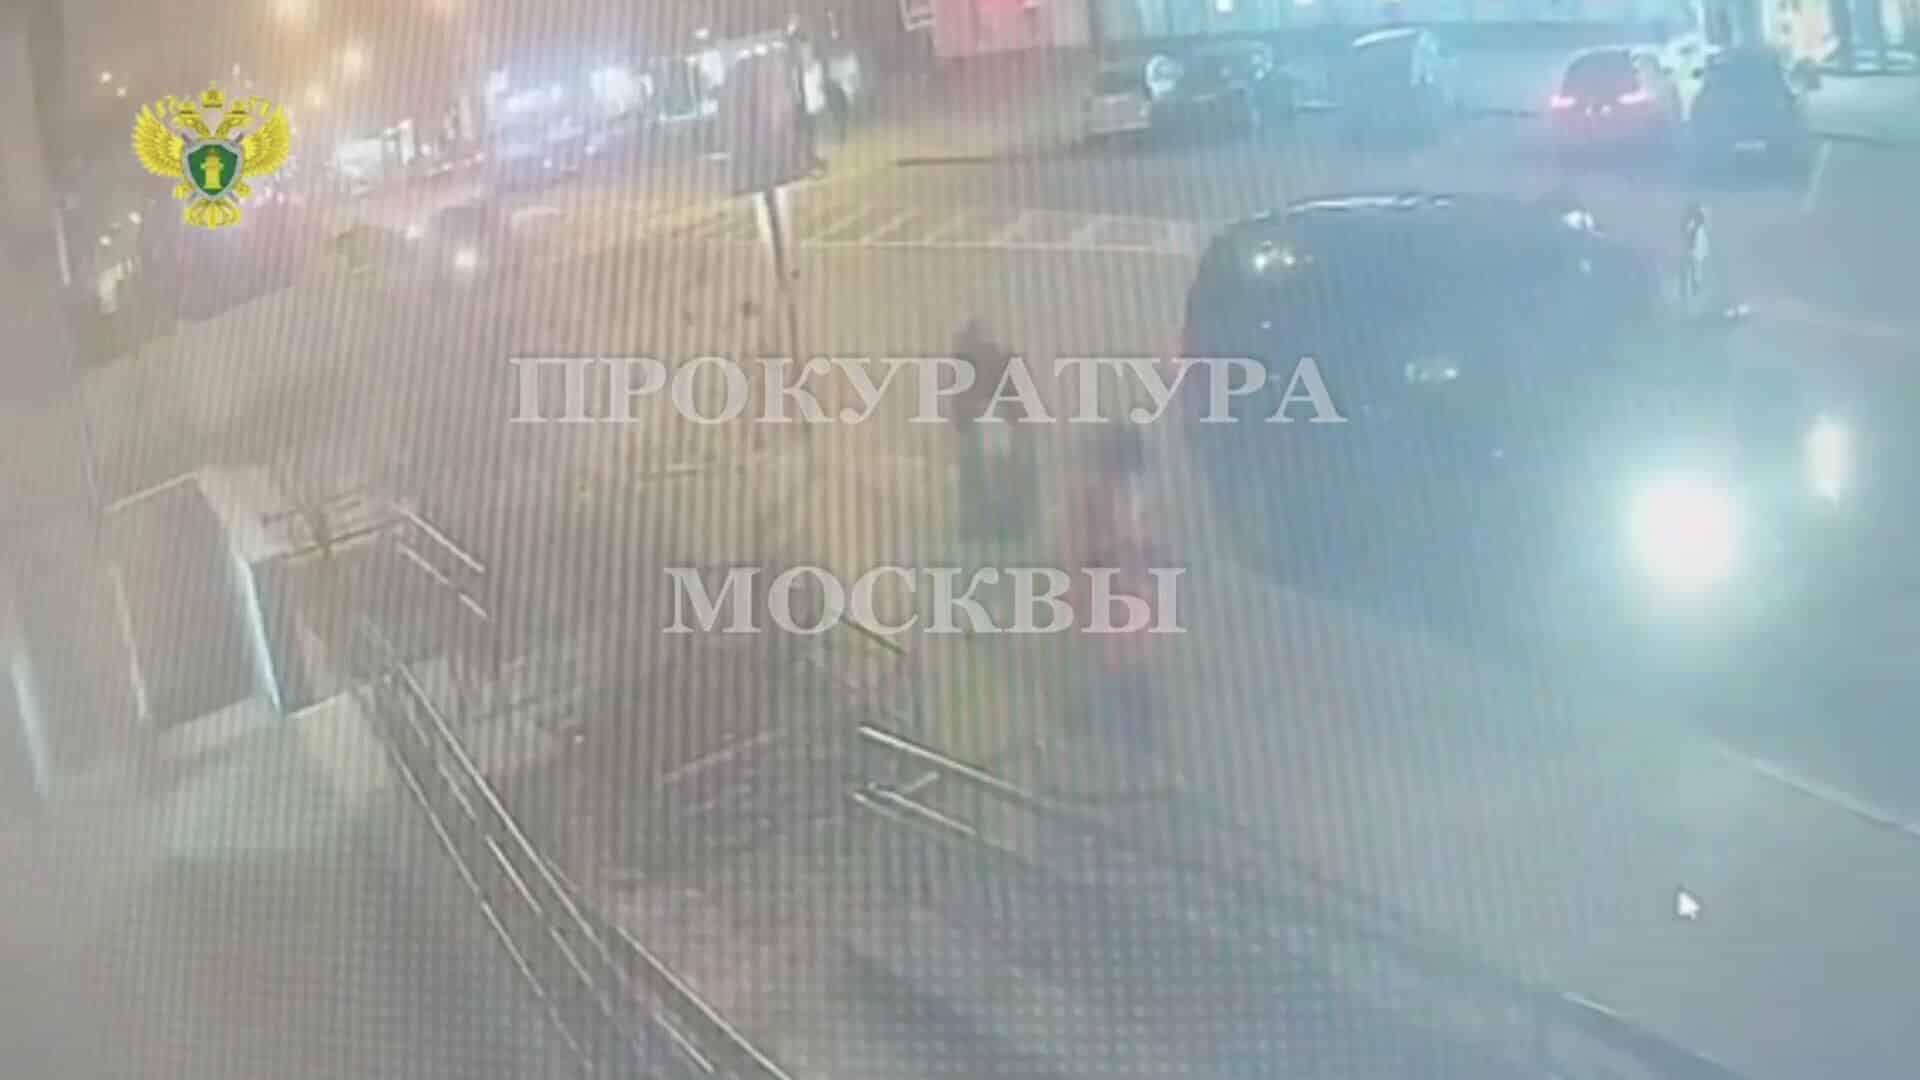 Возле банка в центре Москвы произошла стрельба. Преступники забрали около 300 млн рублей у курьеров